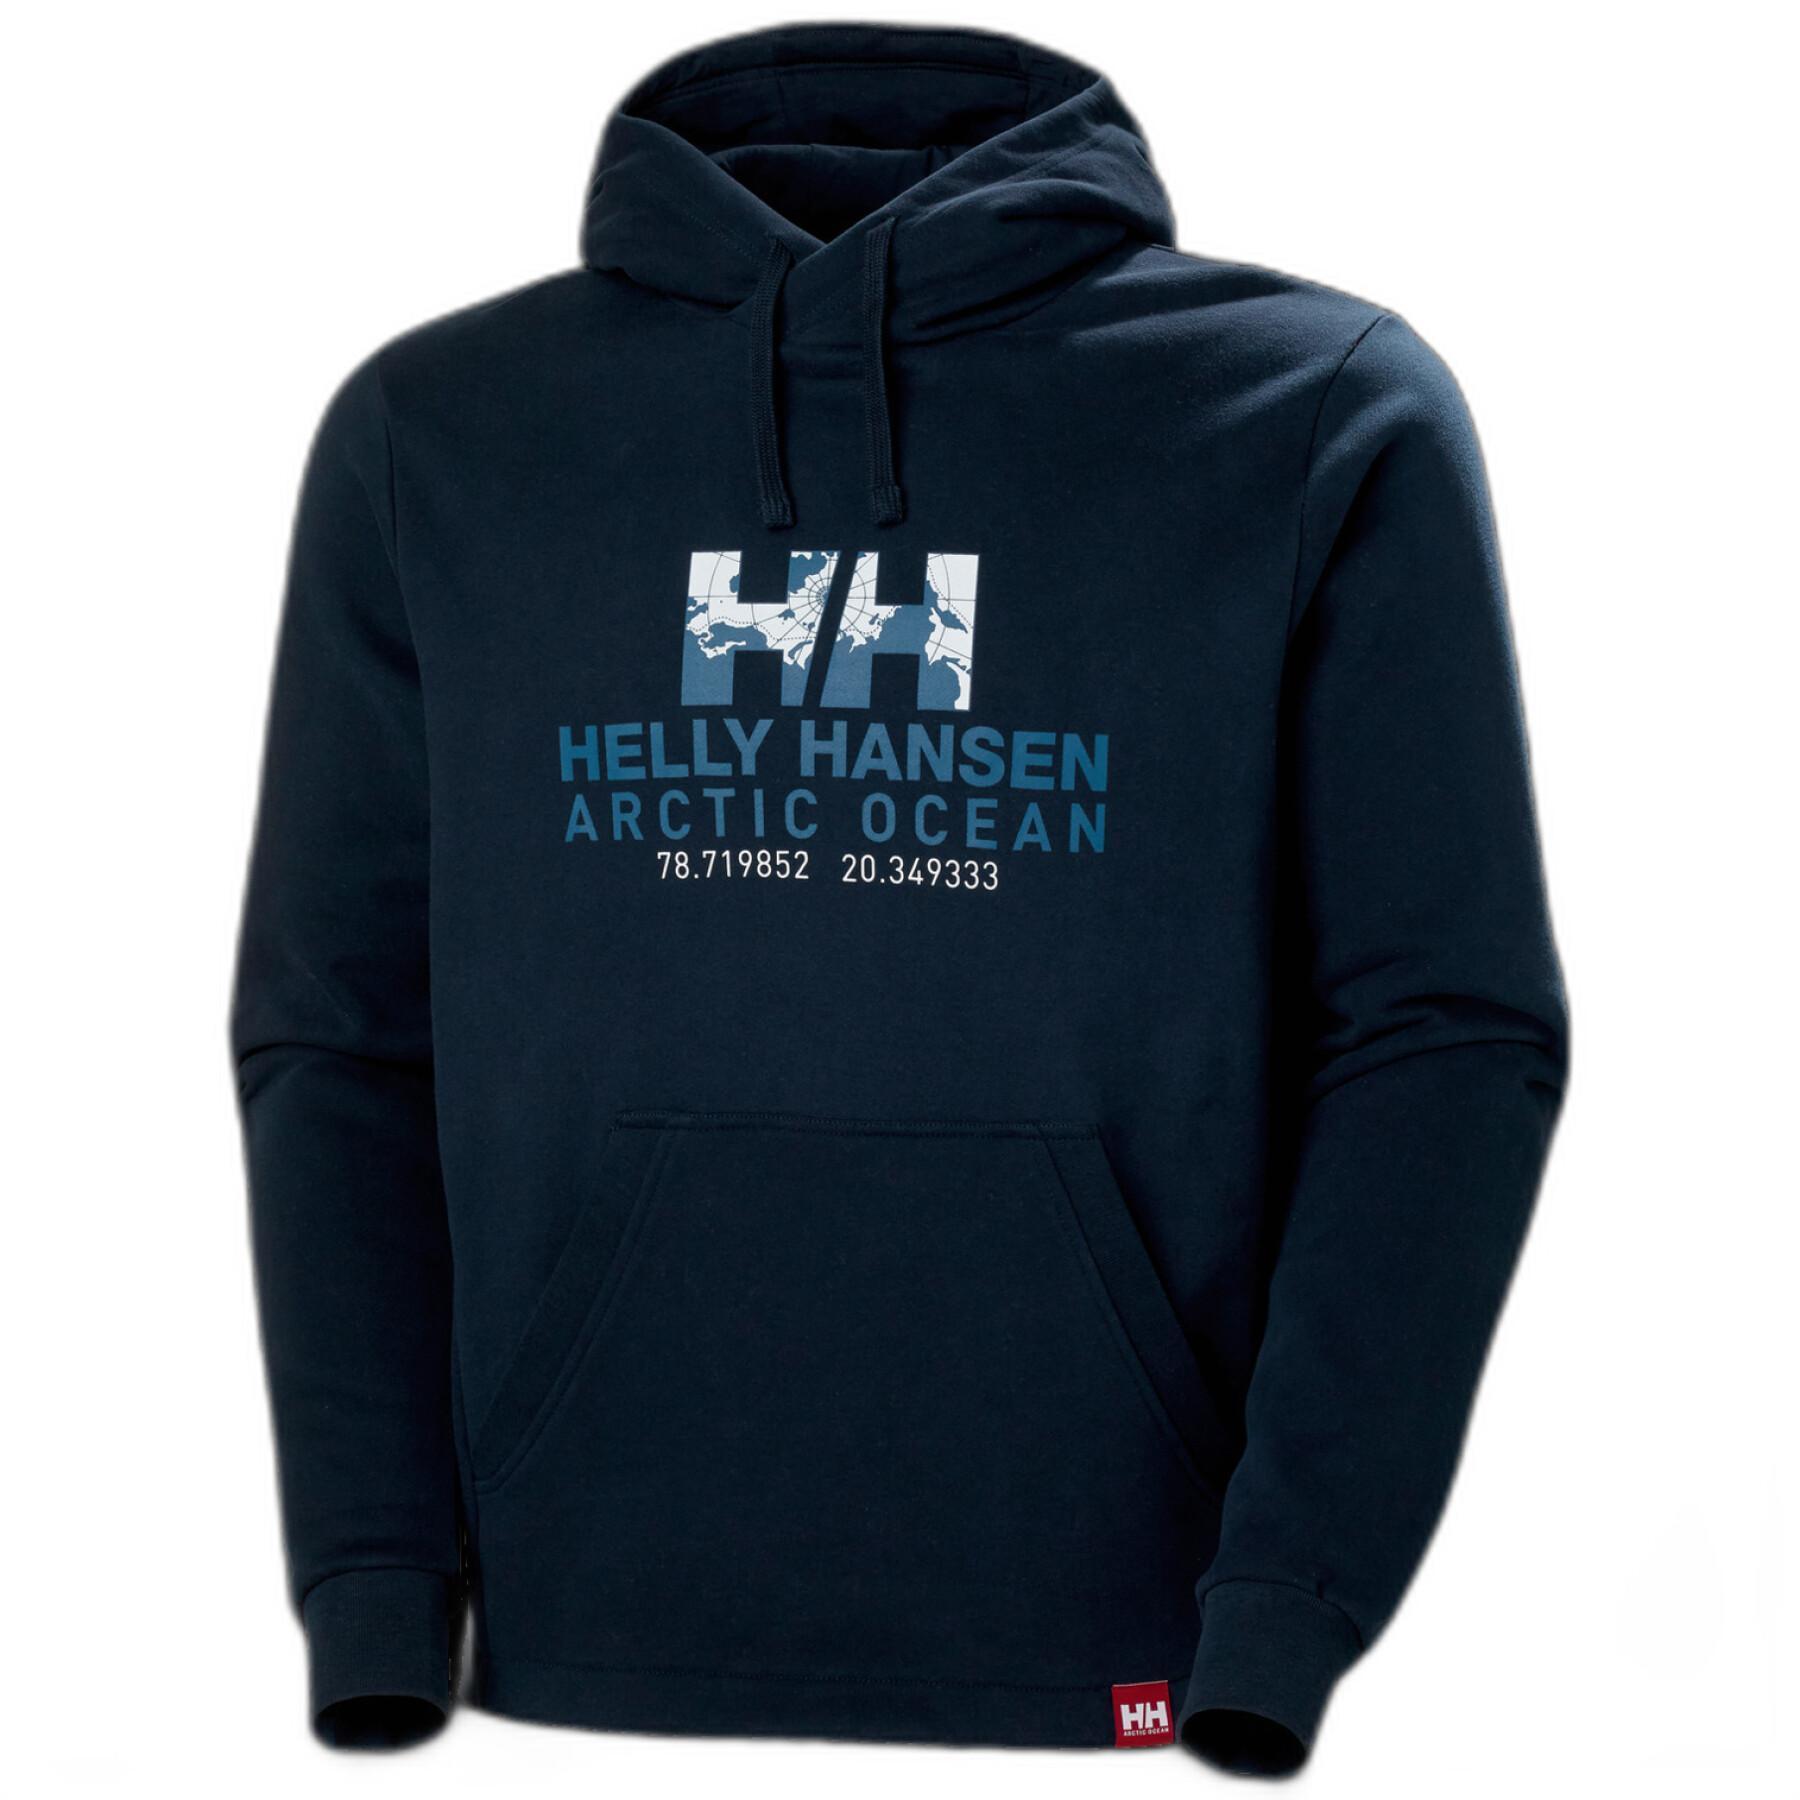 Hooded sweatshirt Helly Hansen arctic ocean